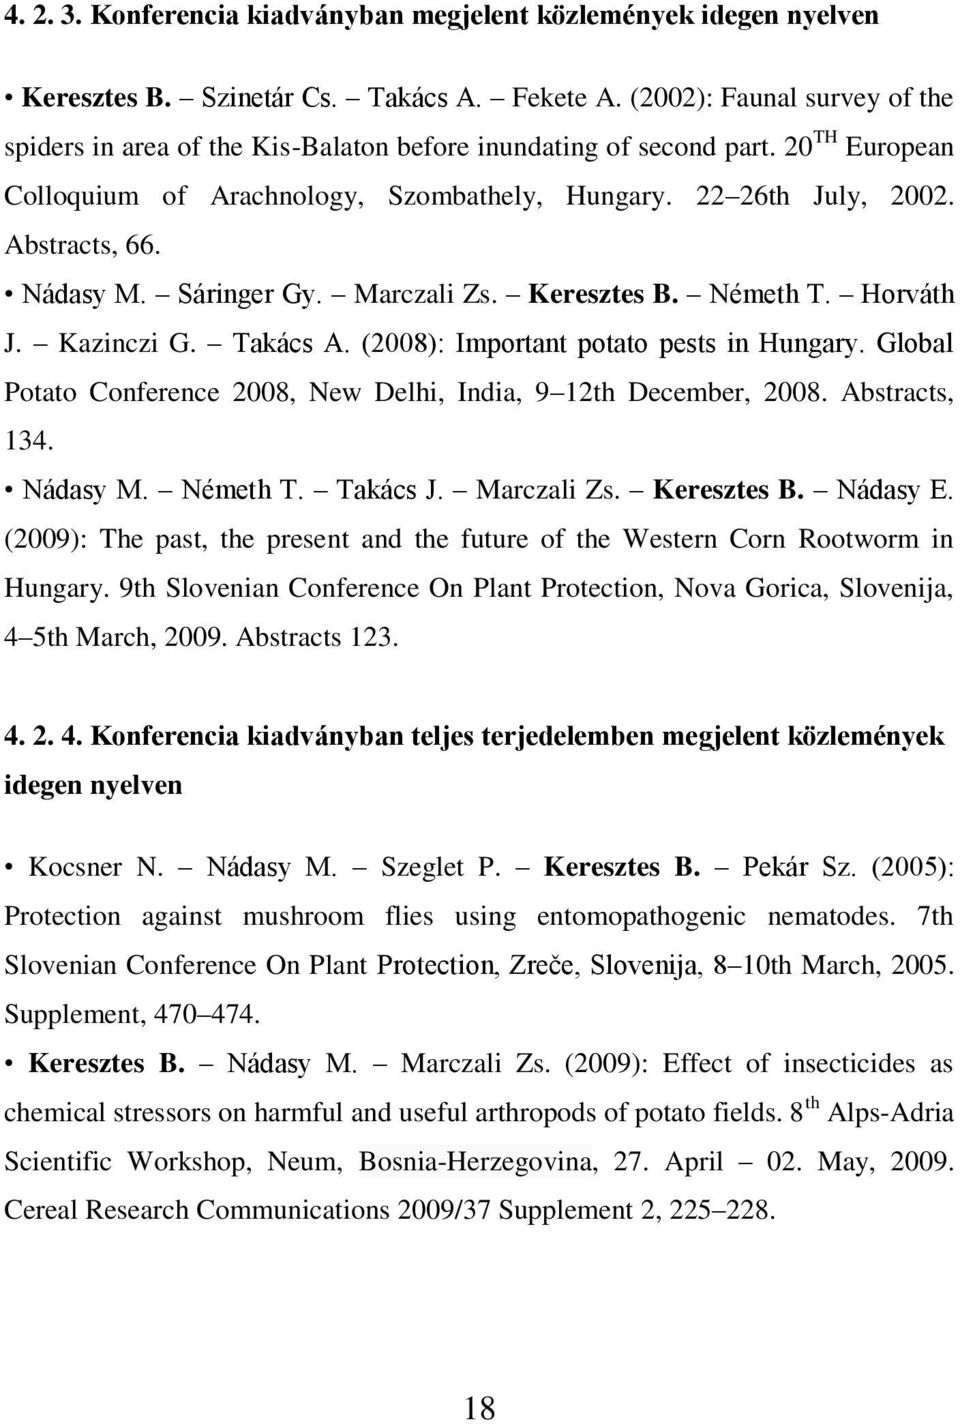 Nádasy M. Sáringer Gy. Marczali Zs. Keresztes B. Németh T. Horváth J. Kazinczi G. Takács A. (2008): Important potato pests in Hungary.